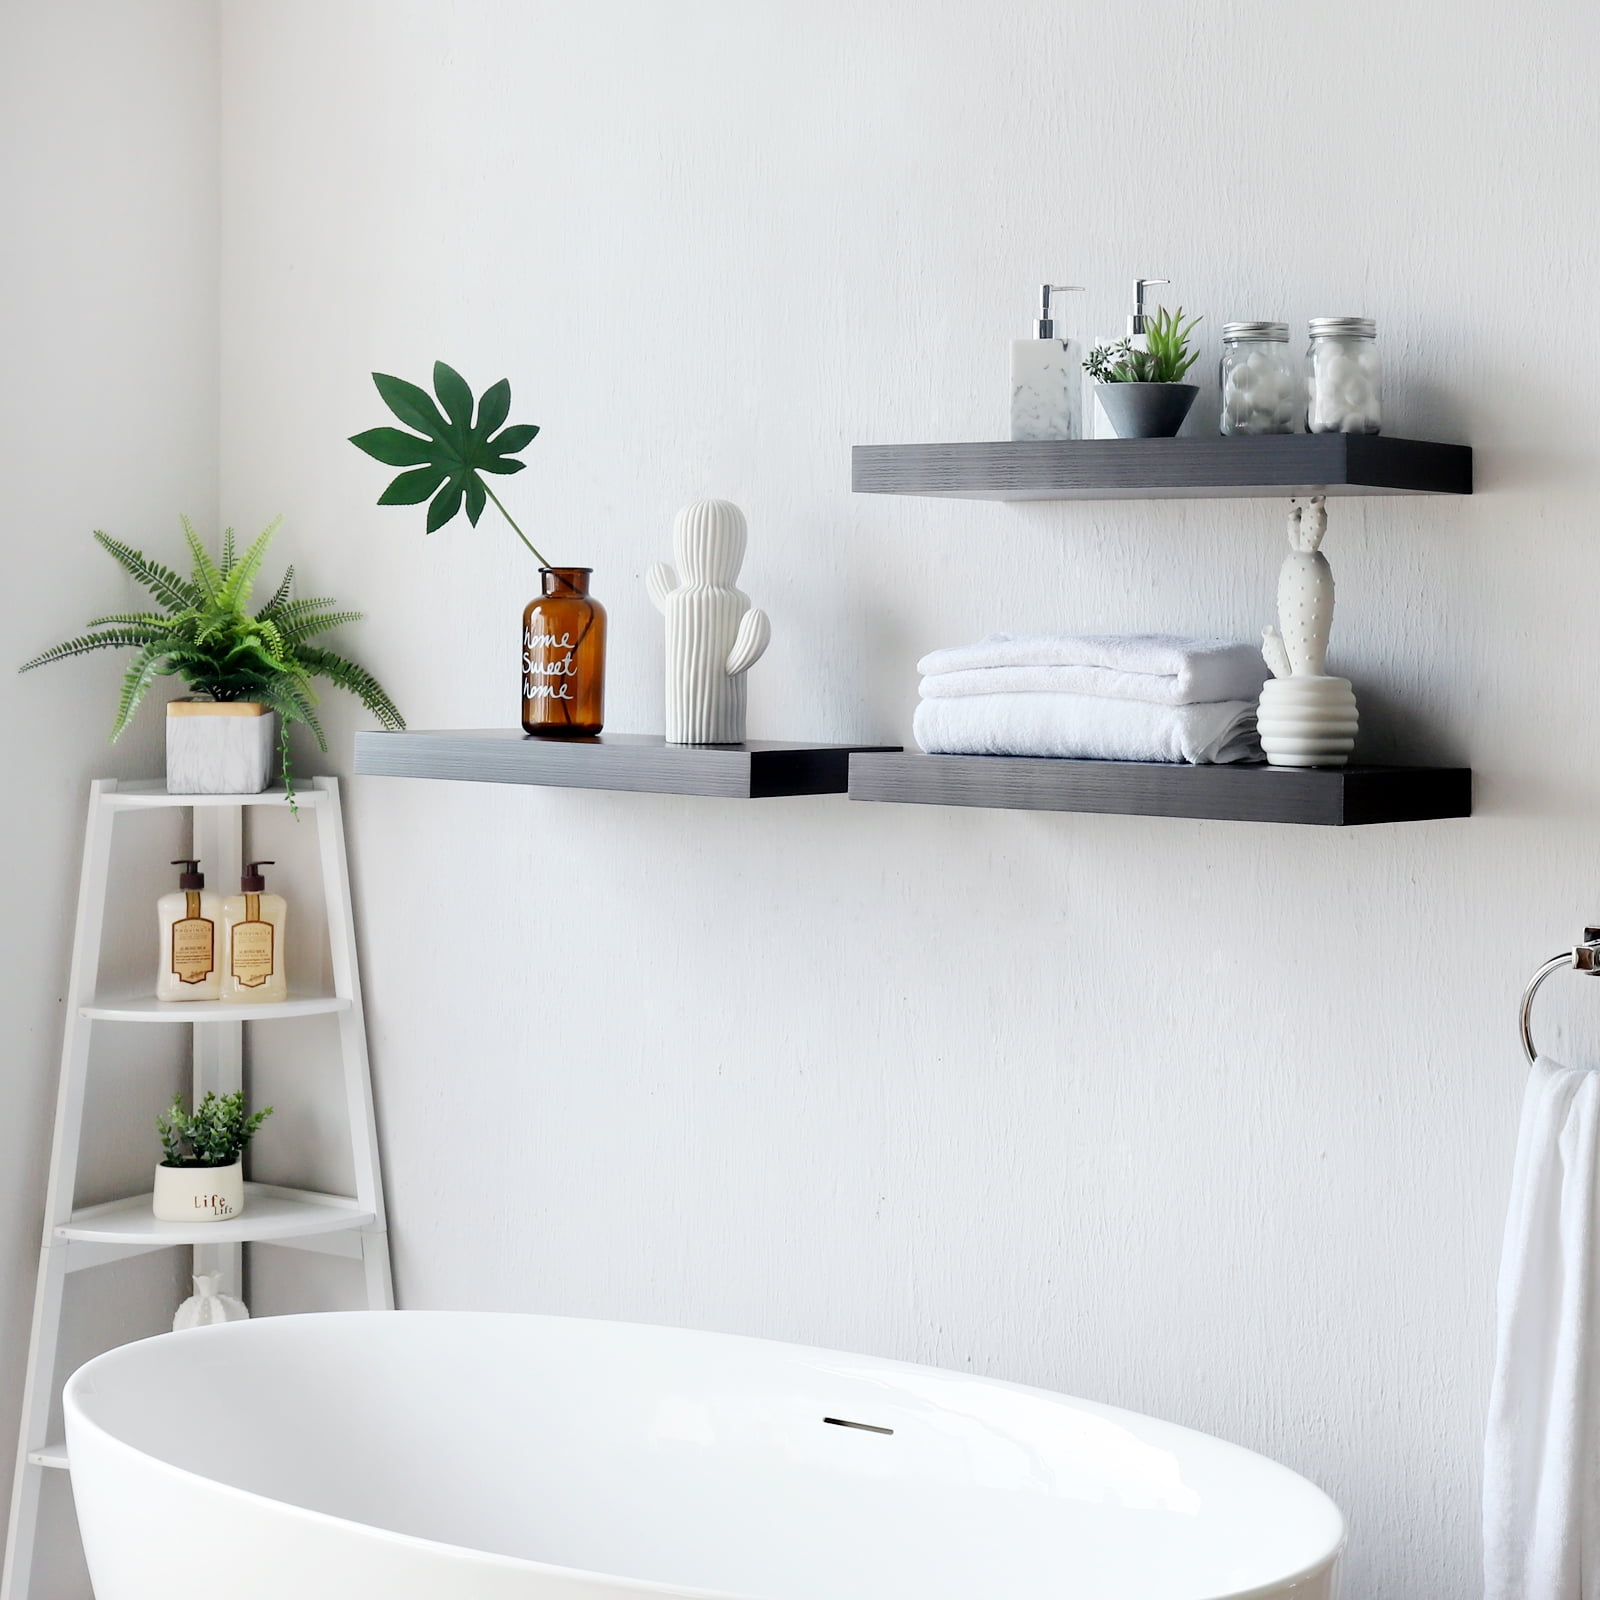 White Modern Shower Shelf , Bathroom Sfelf, Floating Shelf, Bathroom Shelves,  Minimalist Shelves, Industrial Accessories, DOCIA -  Sweden